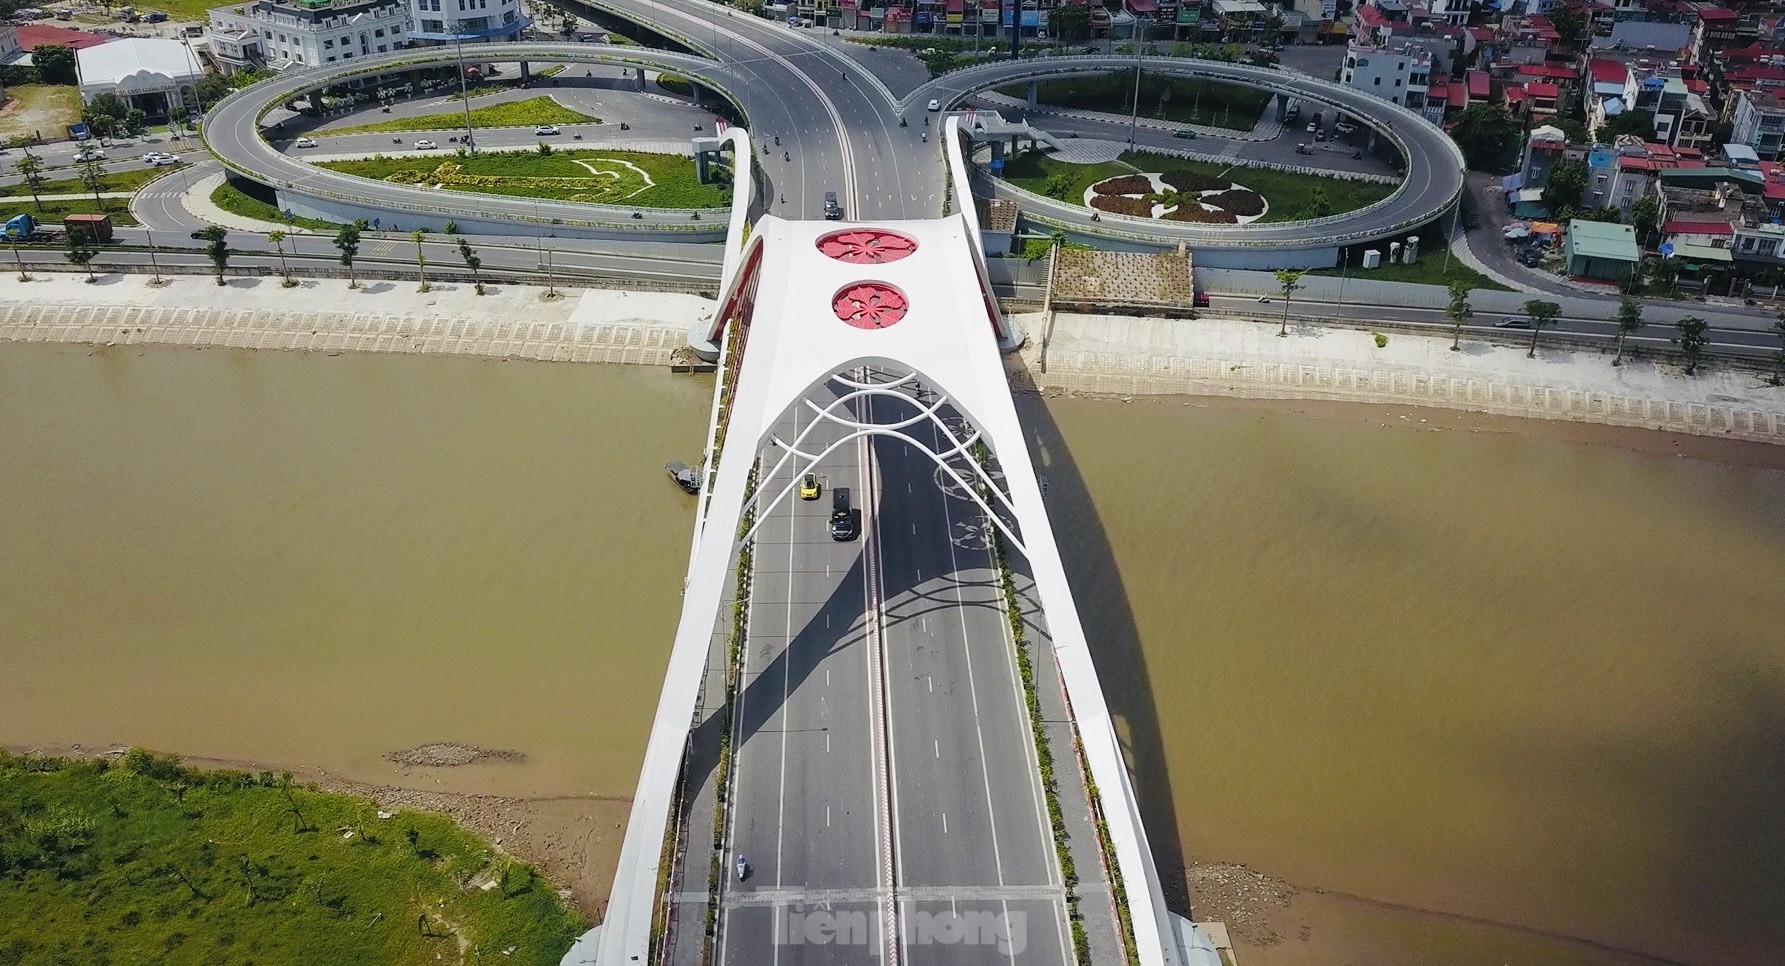 Ấn tượng với vẻ đẹp của hai cây cầu biểu tượng của TP Hải Phòng - Ảnh 9.